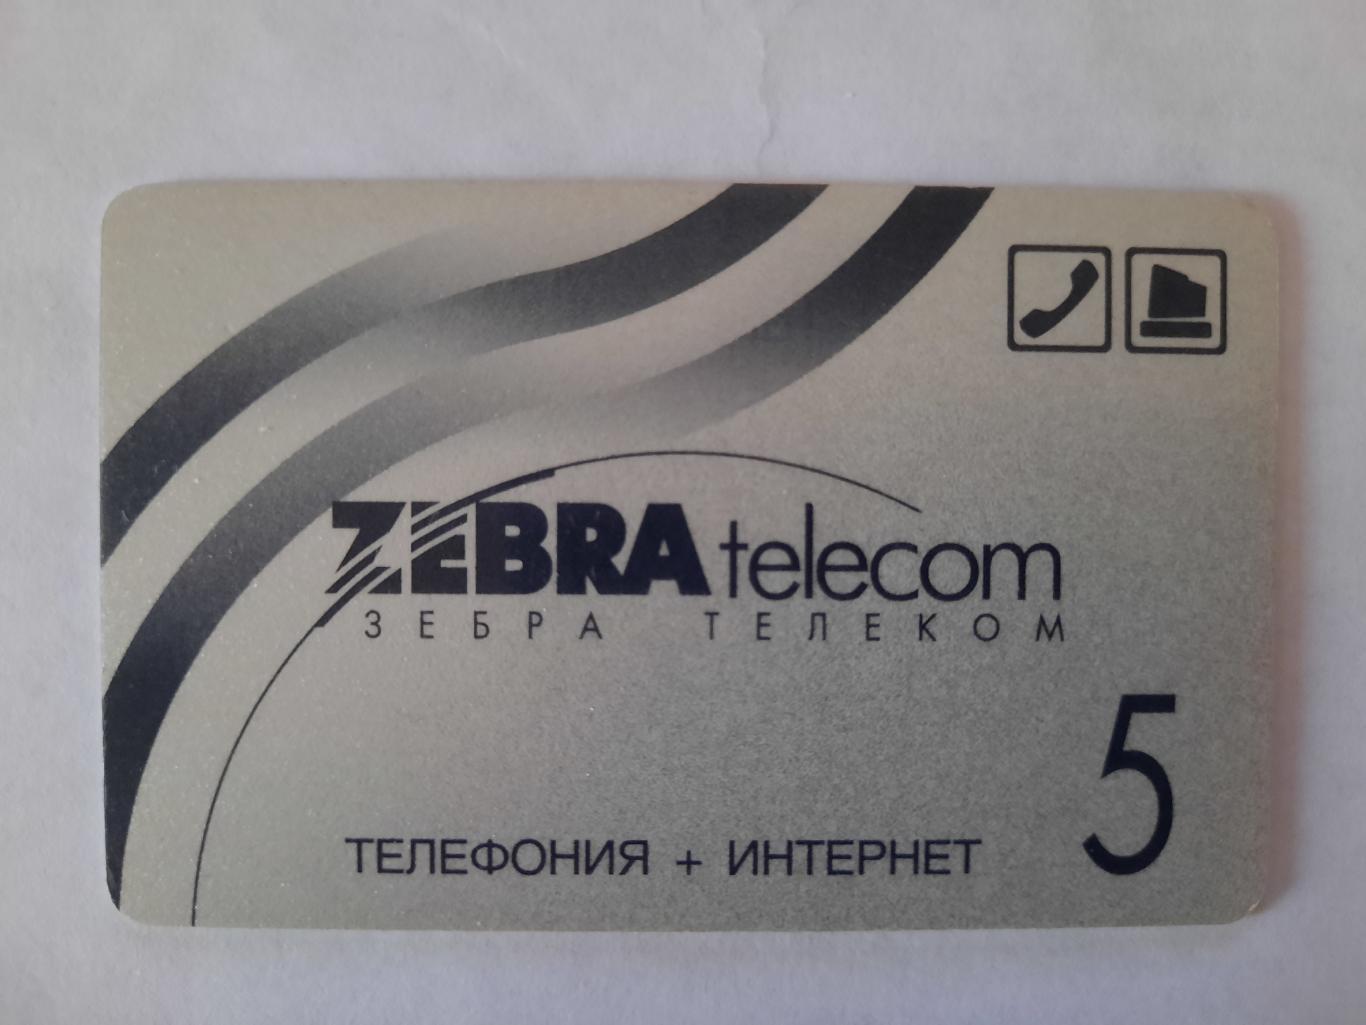 Телефонная карта Зебра телеком 5 (вид 2)